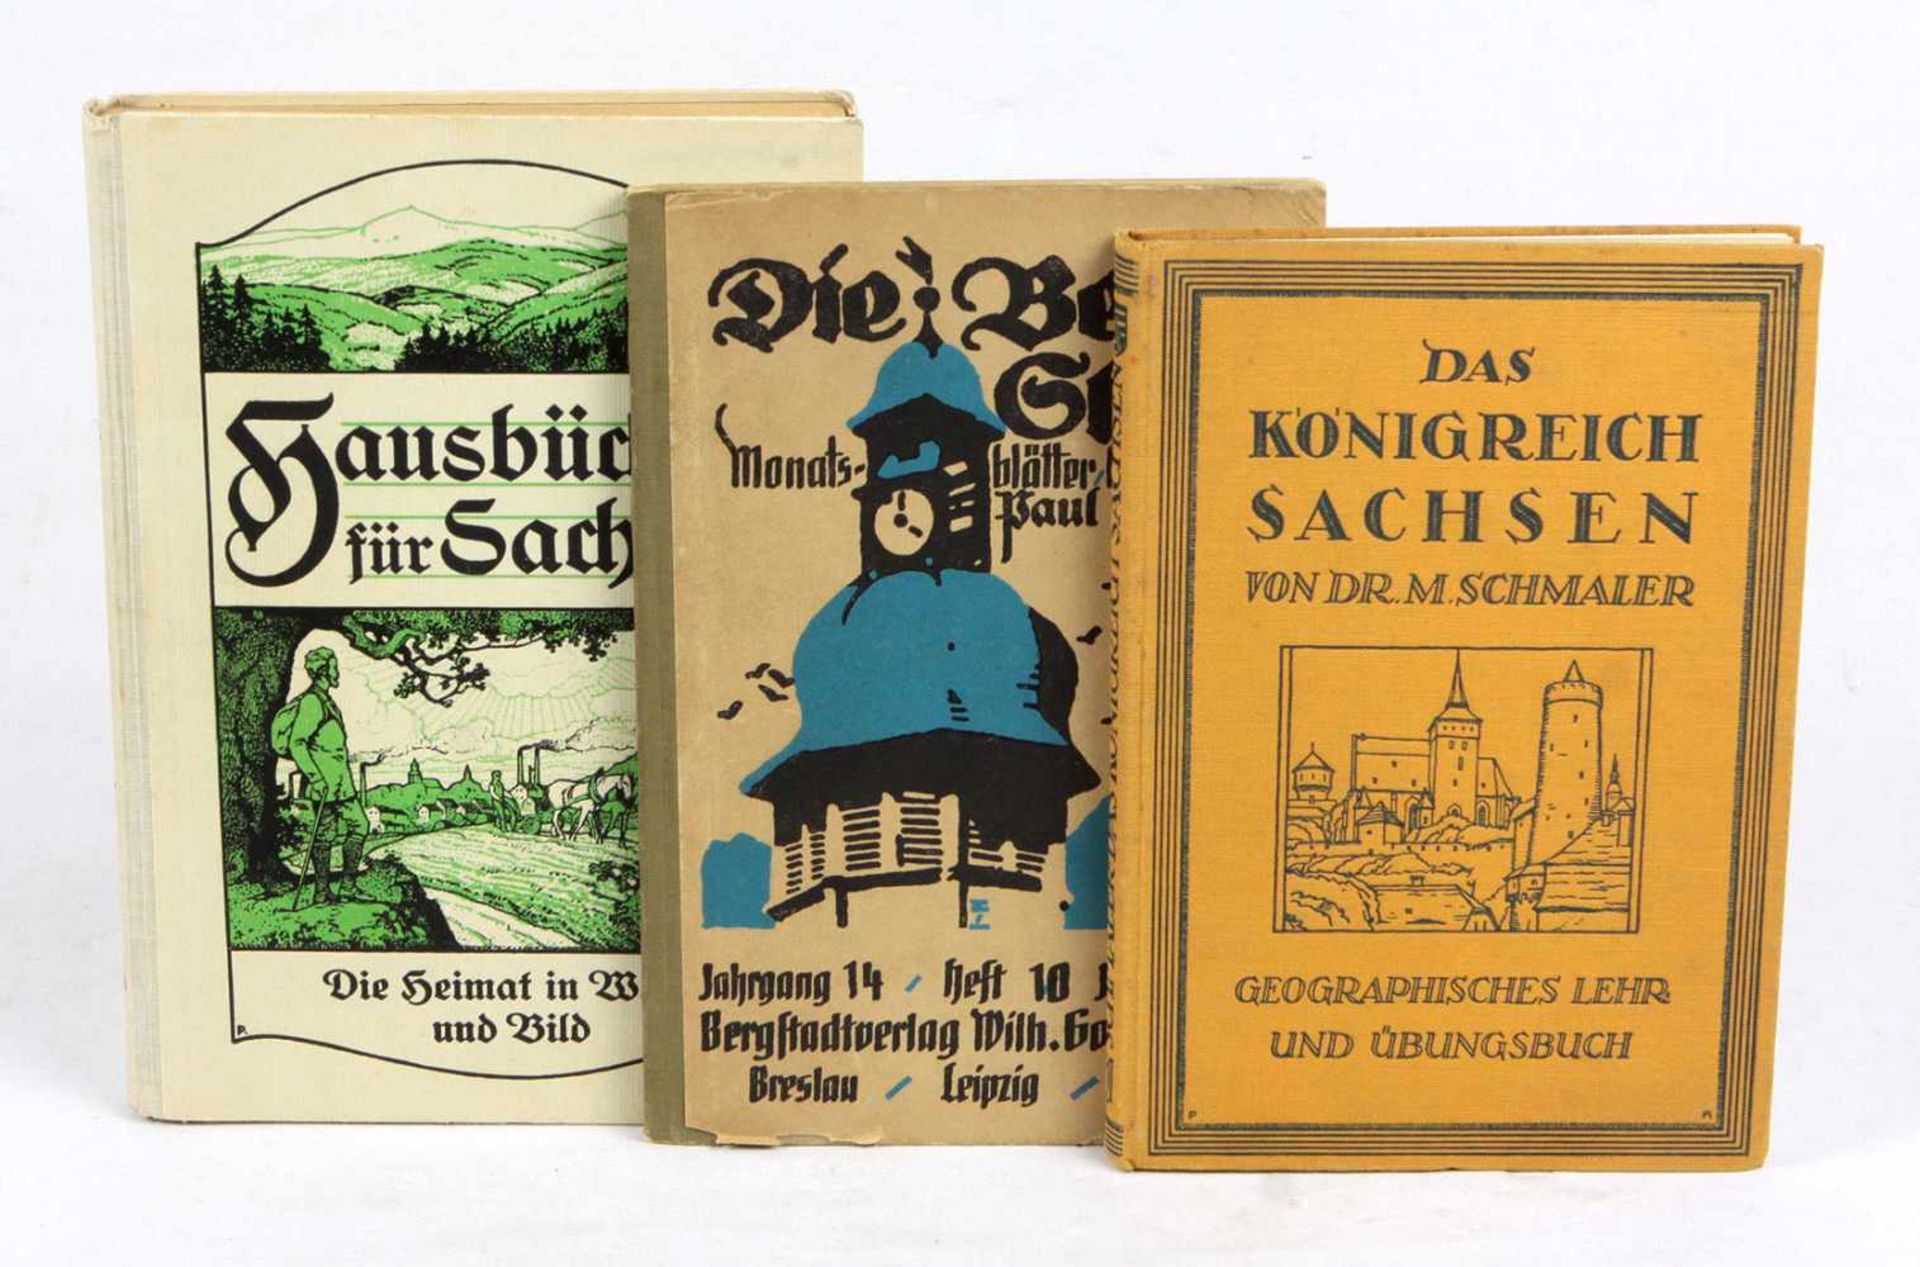 Das Königreich Sachsen u.a.Lehr- u. Übungsbuch der Geographie von Dr. M. Schmaler, 192 S. mit